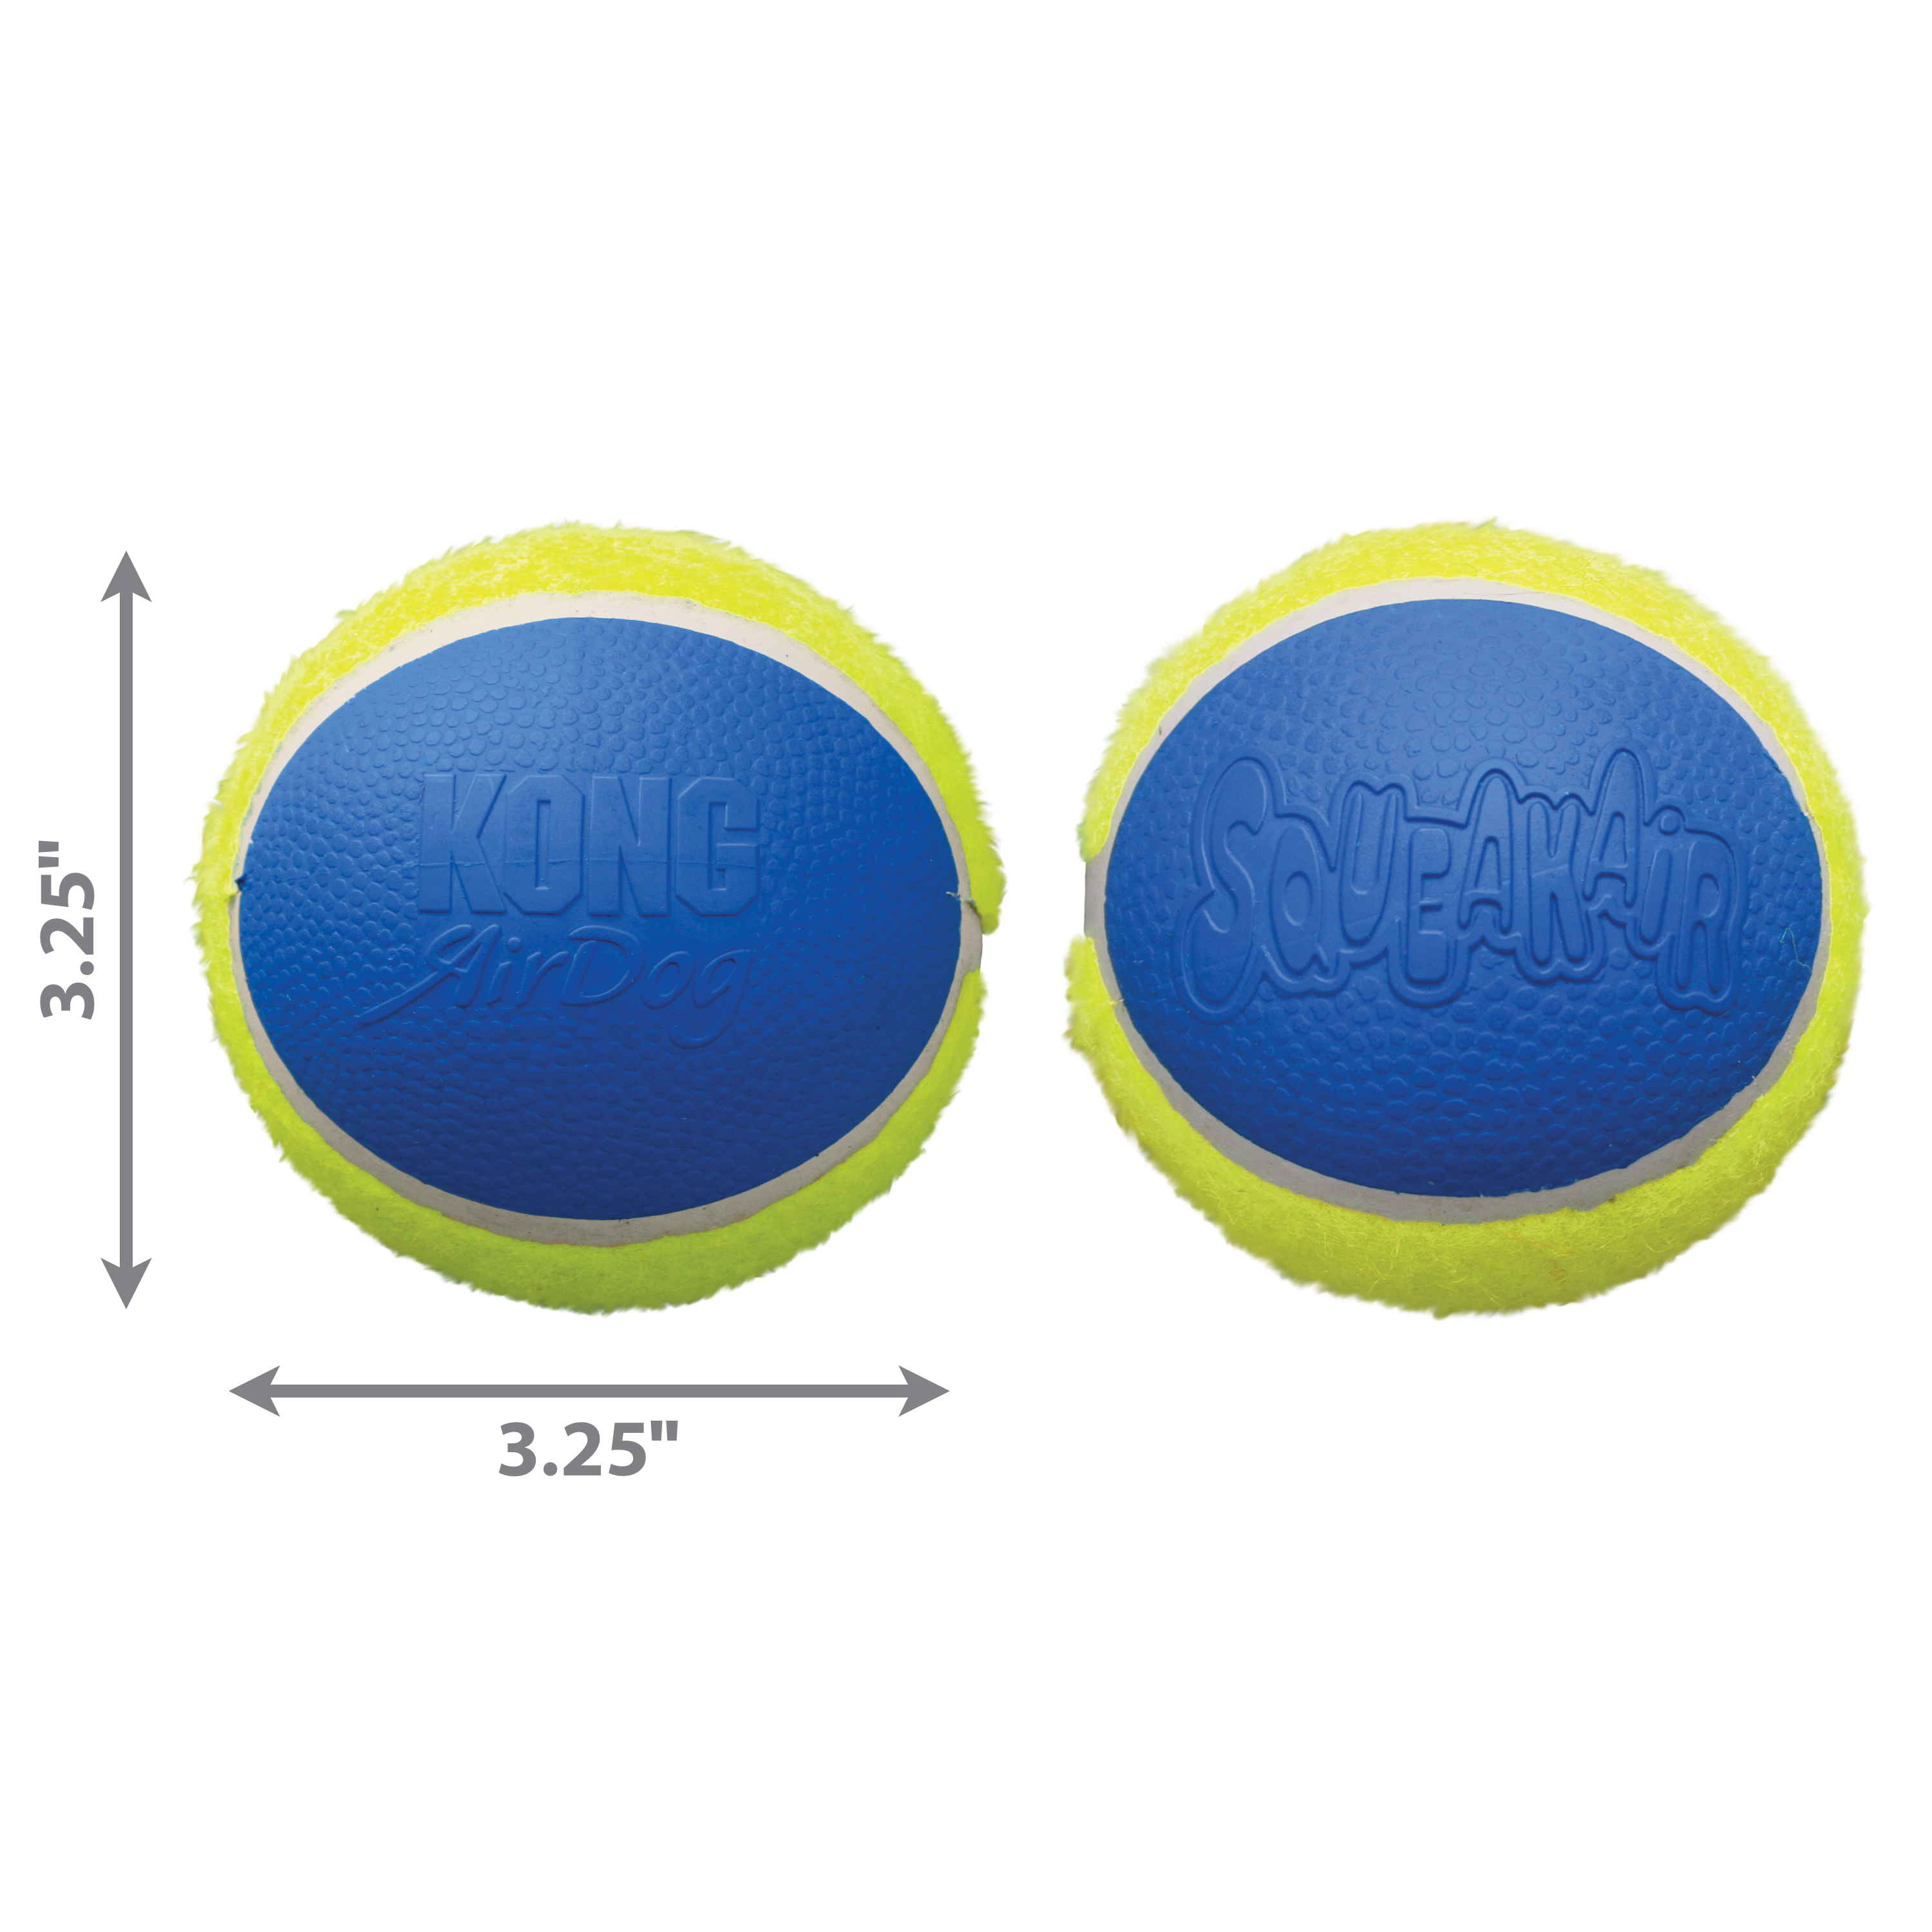 SqueakAir Ultra Balls 2-pk dimoffpack product image